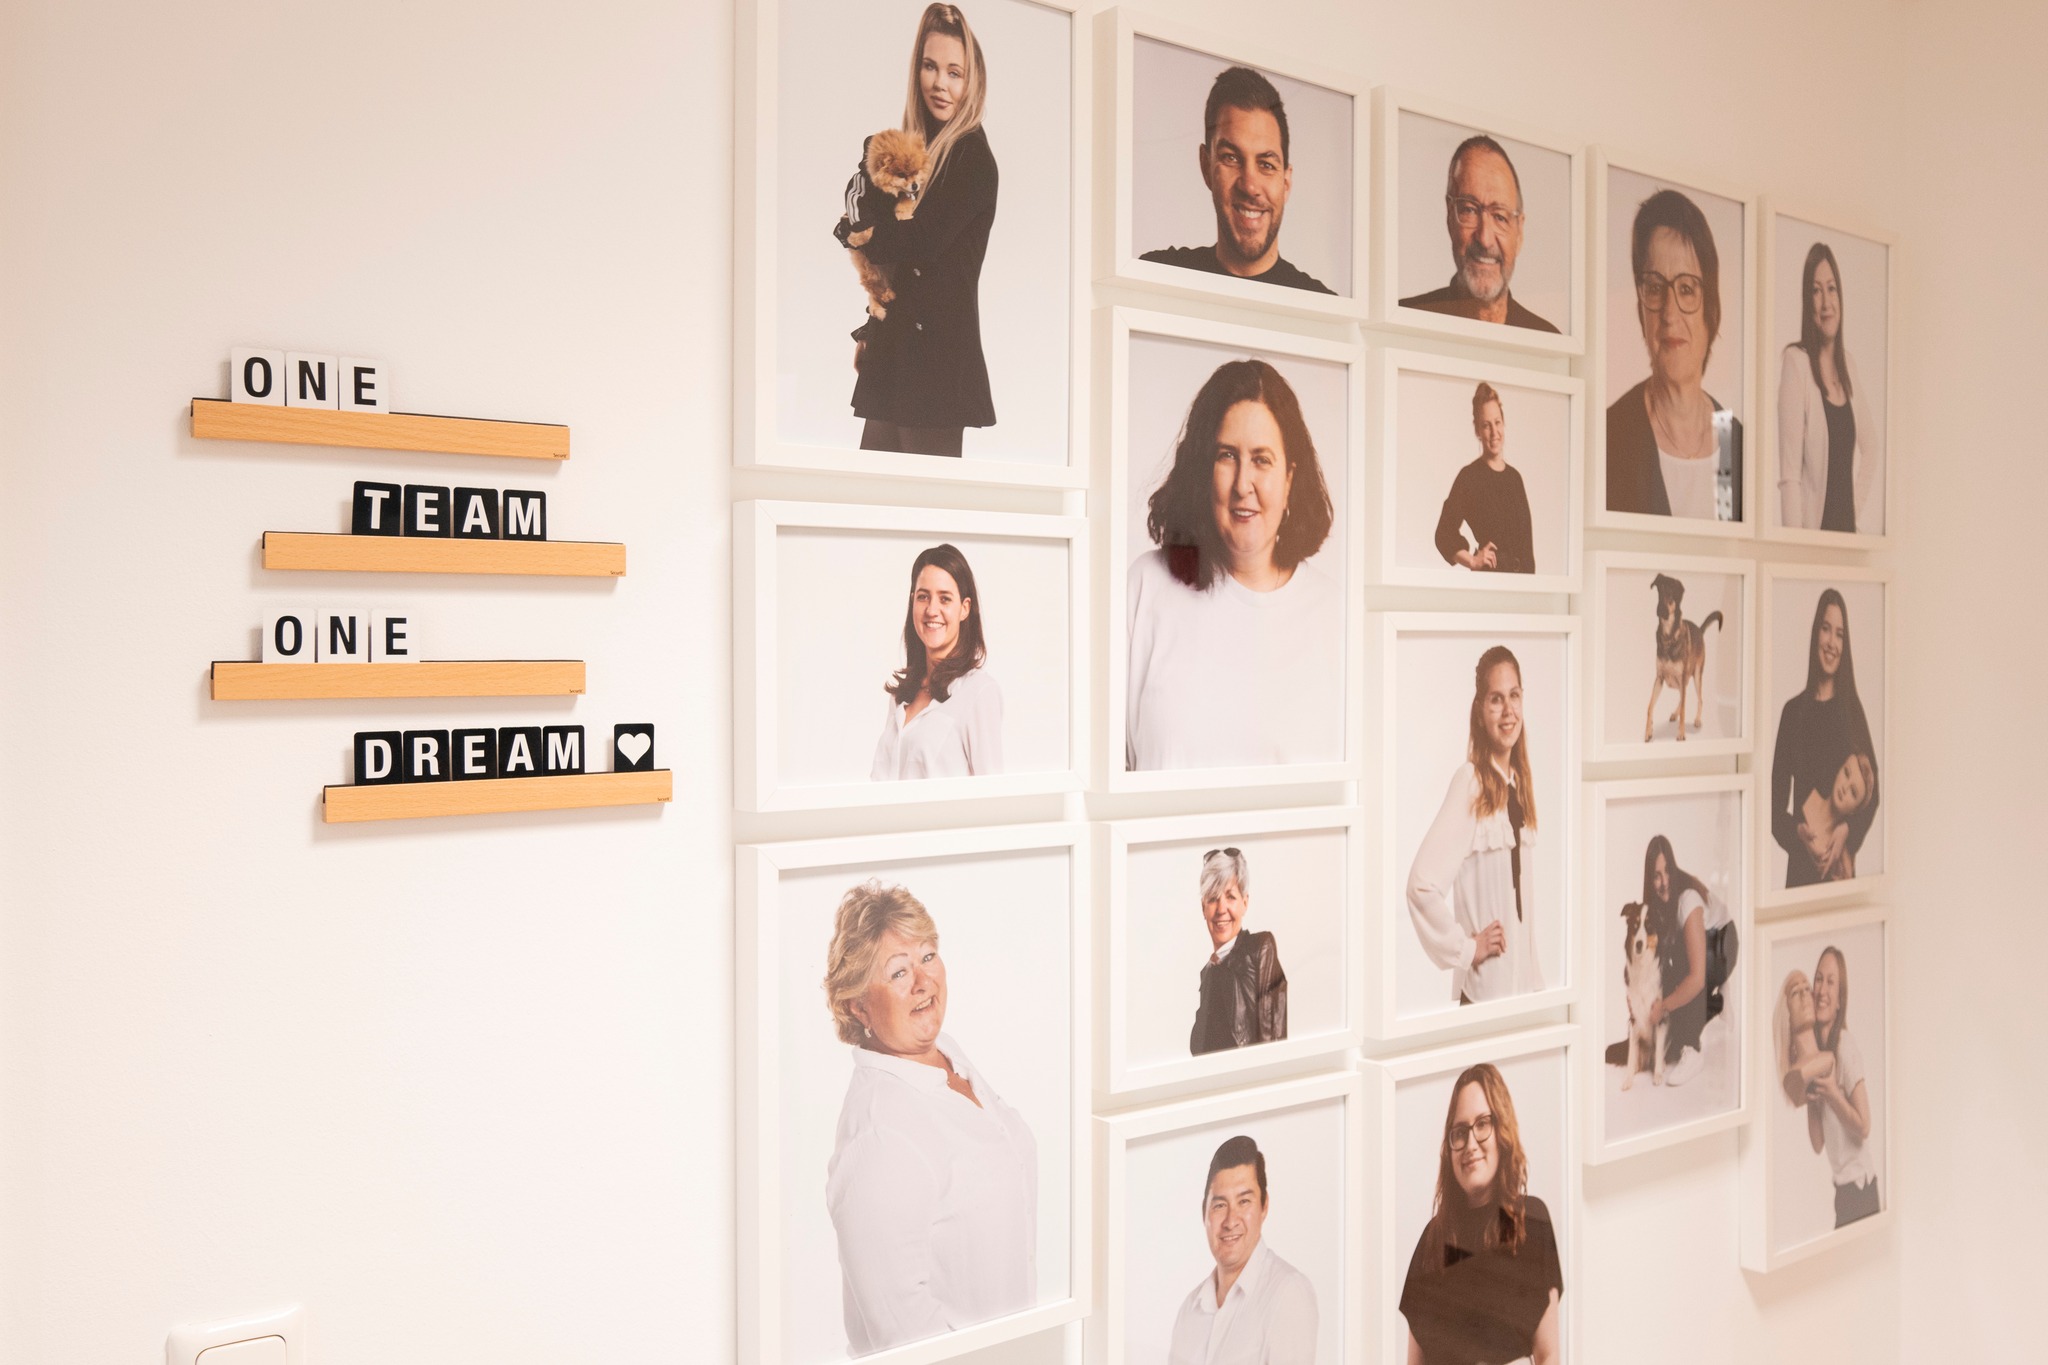 Eine weiße Wand mit mehreren Portraits des L'IMAGE Teams in weißen Bilderrahmen. Links von den Bilderrahmen hängen vier dekorative hölzerne Leisten, pro Leiste ein Wort "ONE TEAM ONE DREAM" 